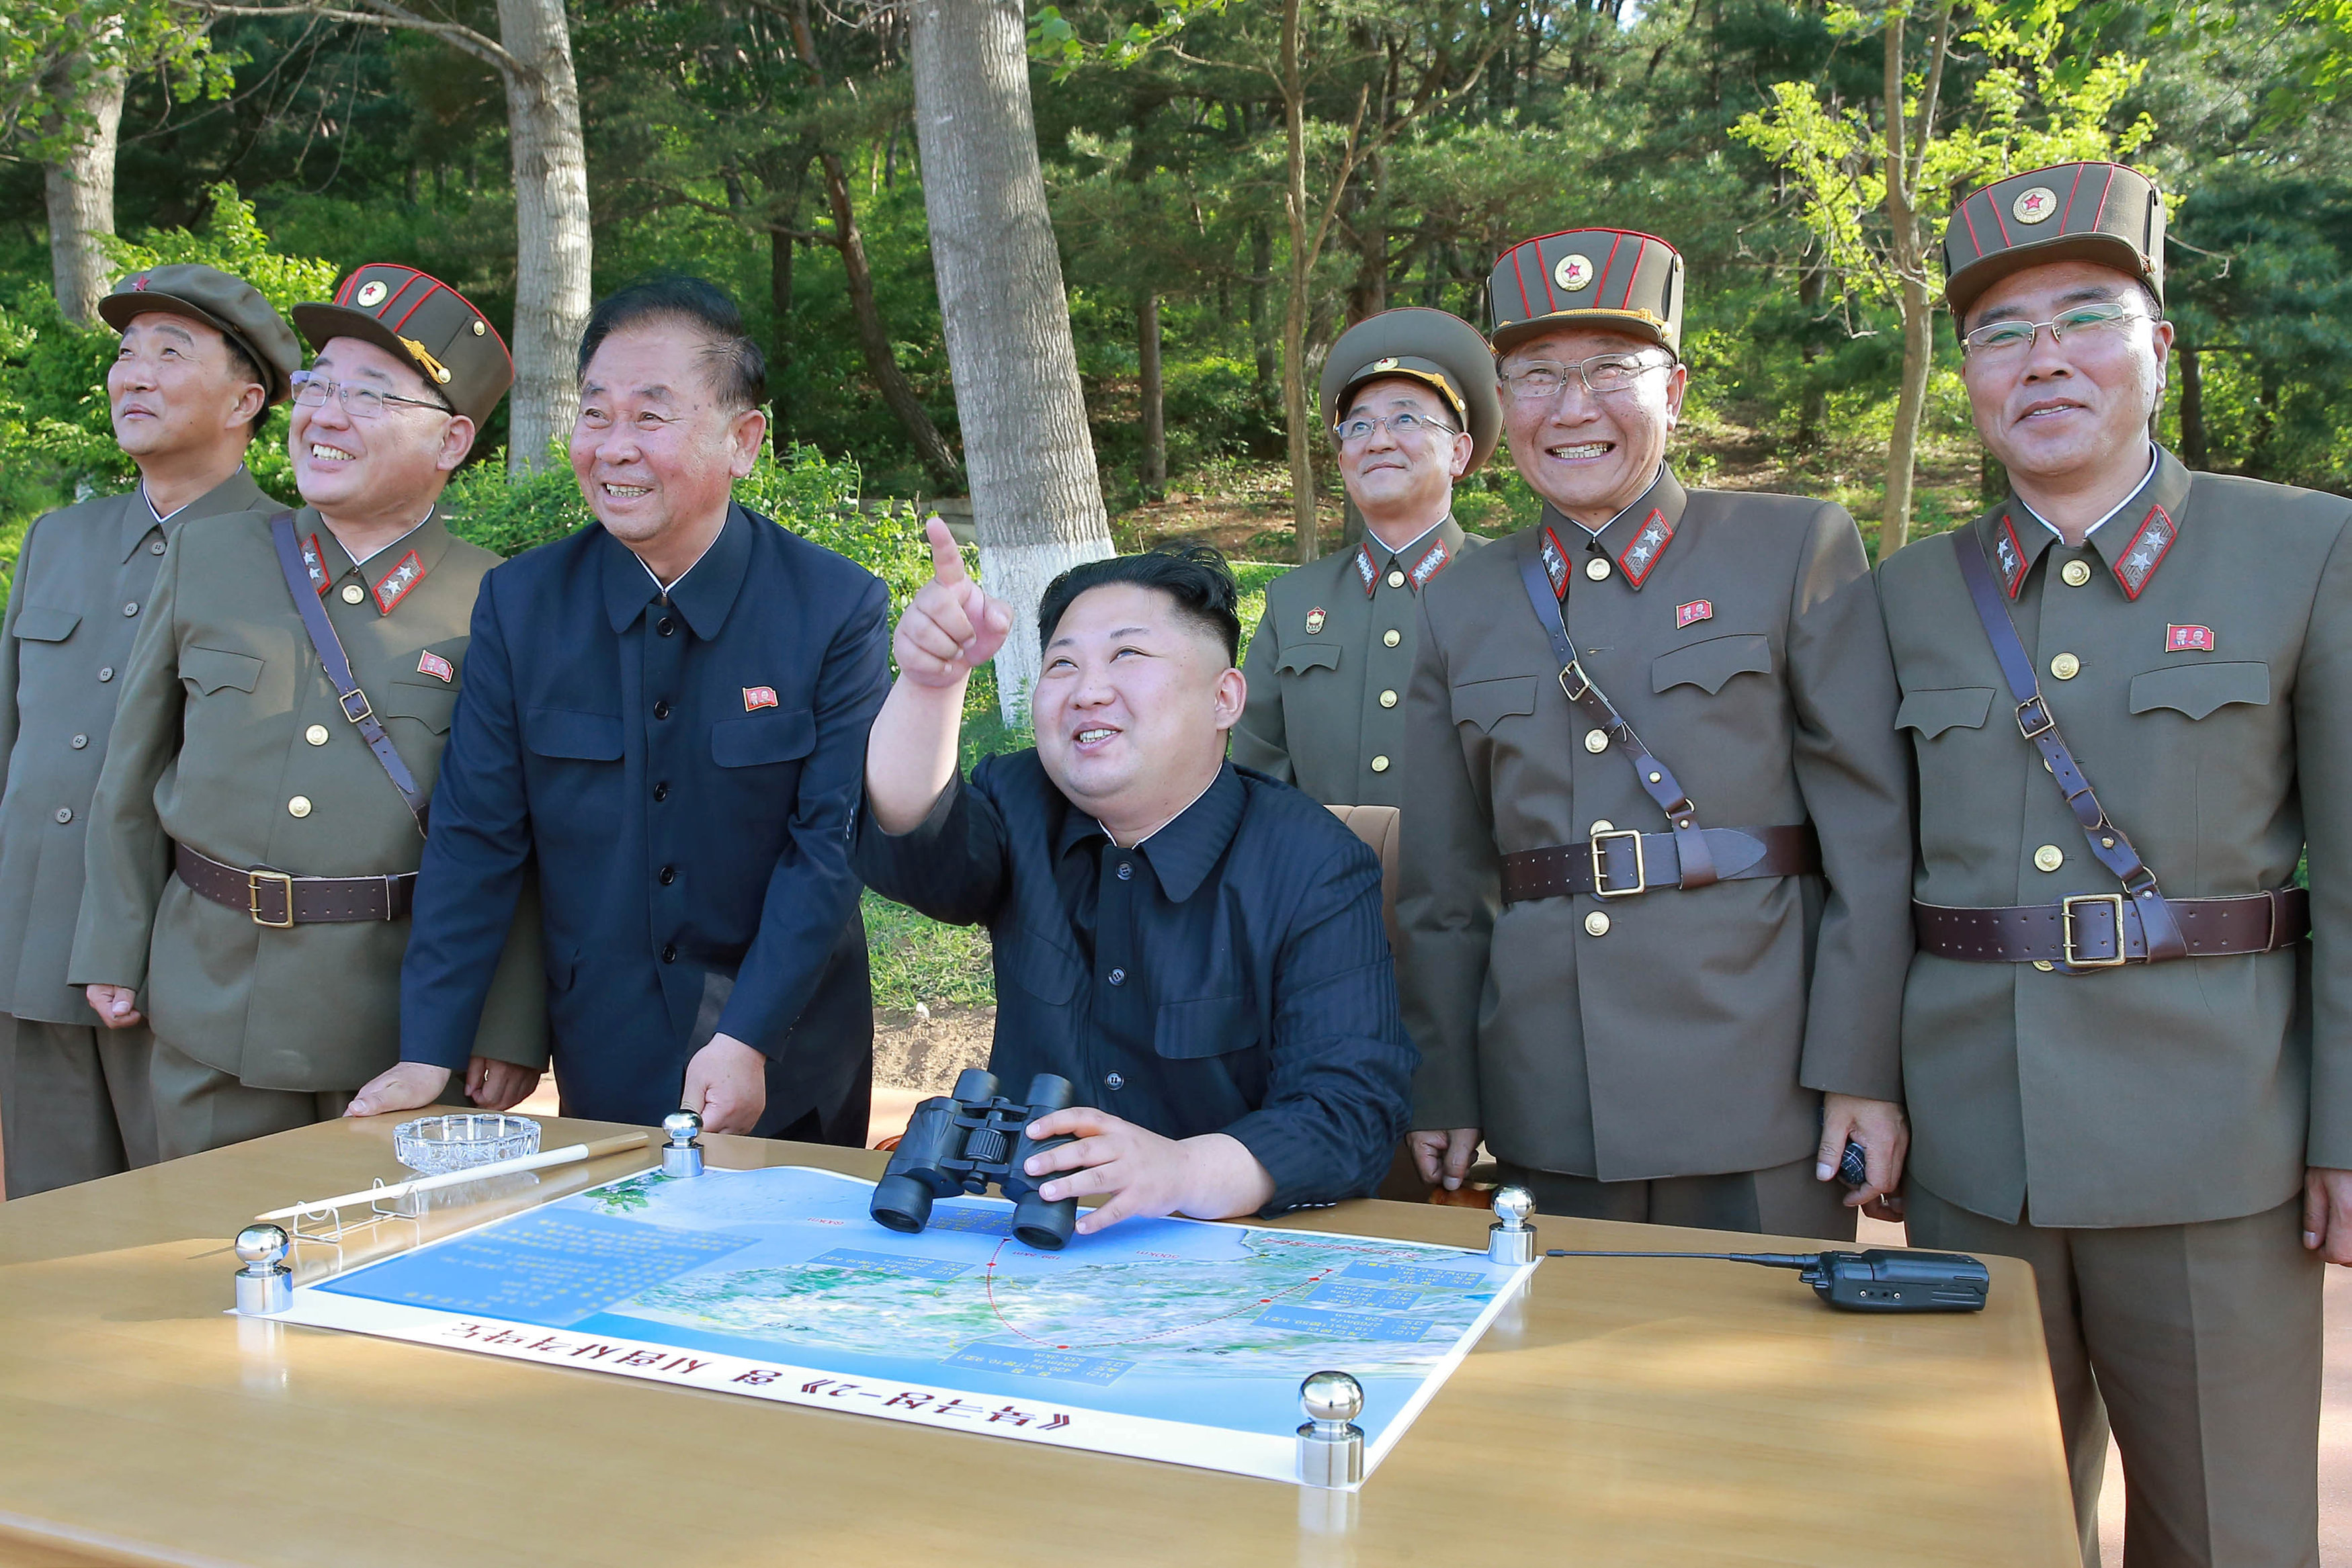 زعيم كوريا الشمالية يشير إلى الصاروخ فى السماء فور اطلاقه